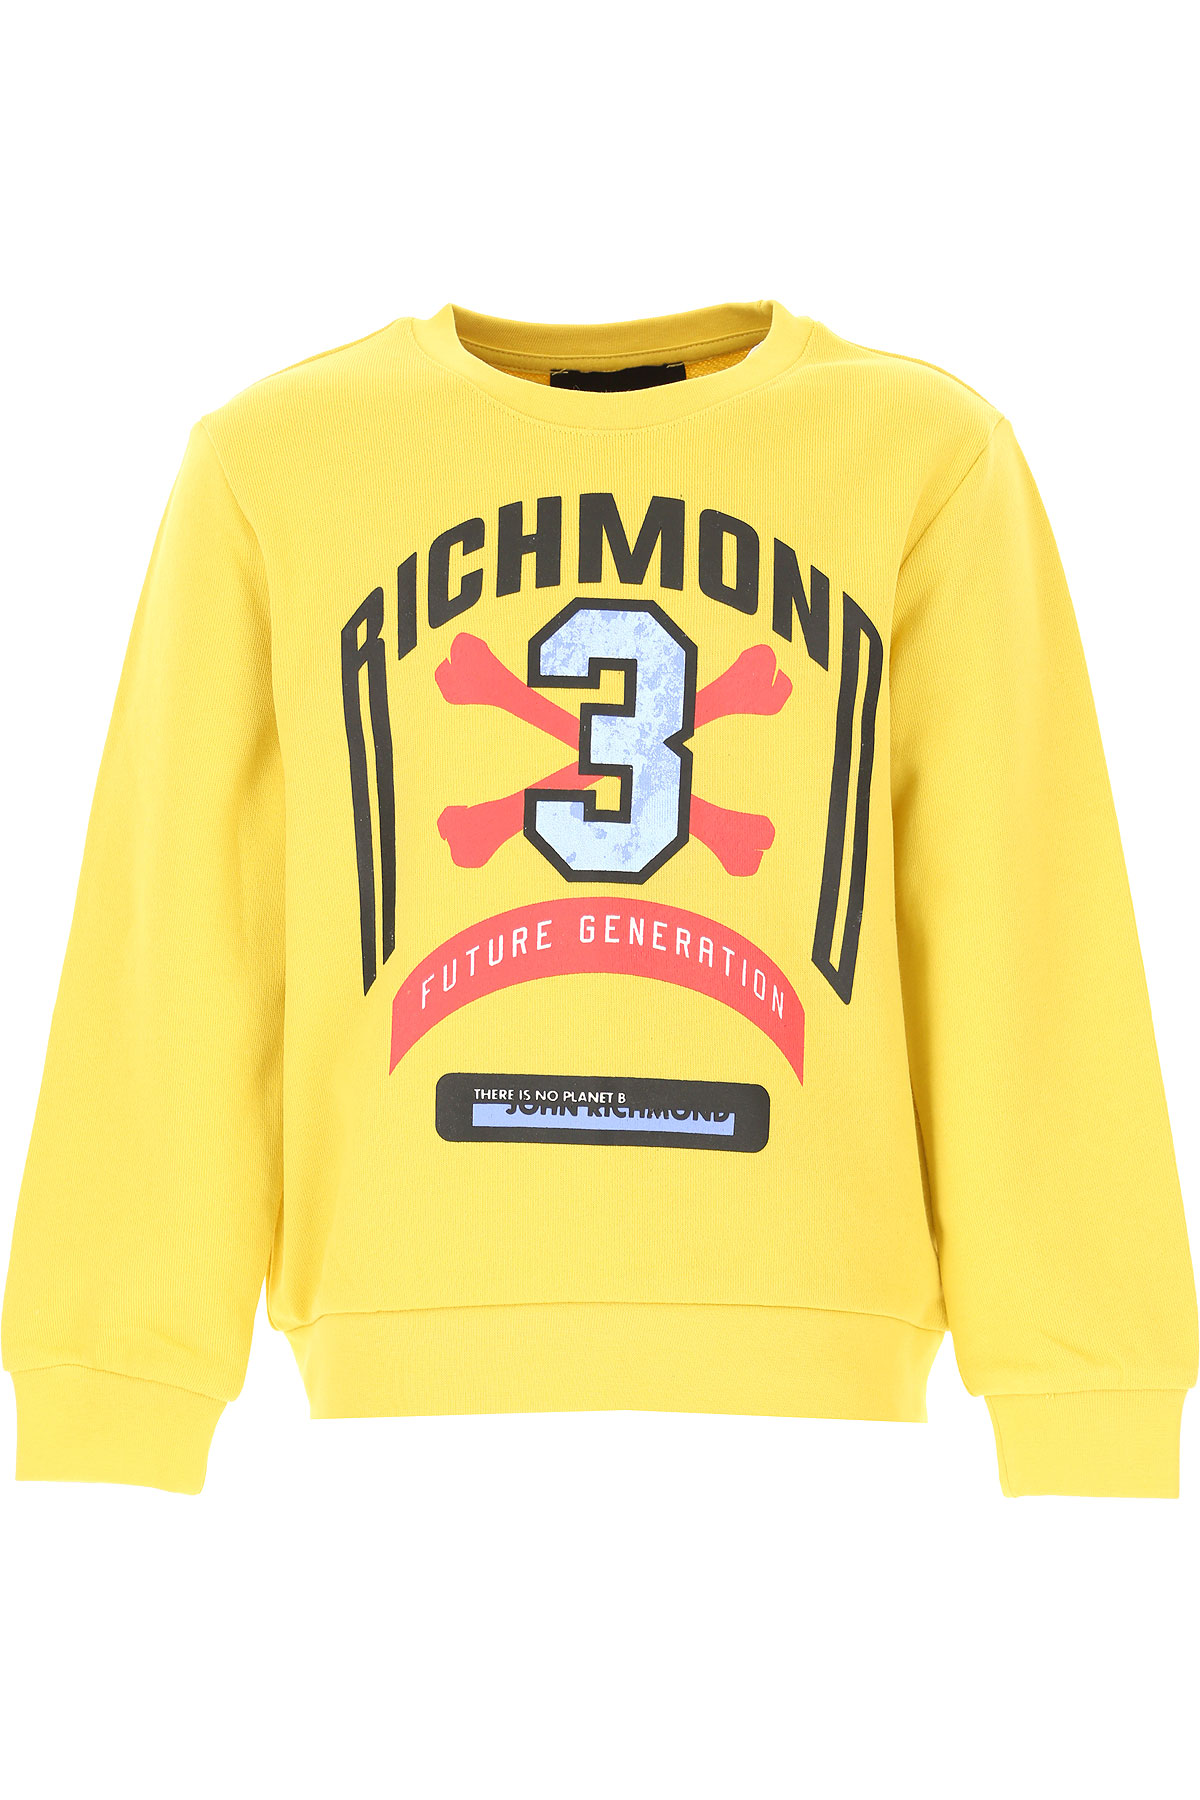 Richmond Kinder Sweatshirt & Kapuzenpullover für Jungen Günstig im Sale, Gelb, Baumwolle, 2017, 10Y 12Y 14Y 16Y 4Y 6Y 8Y